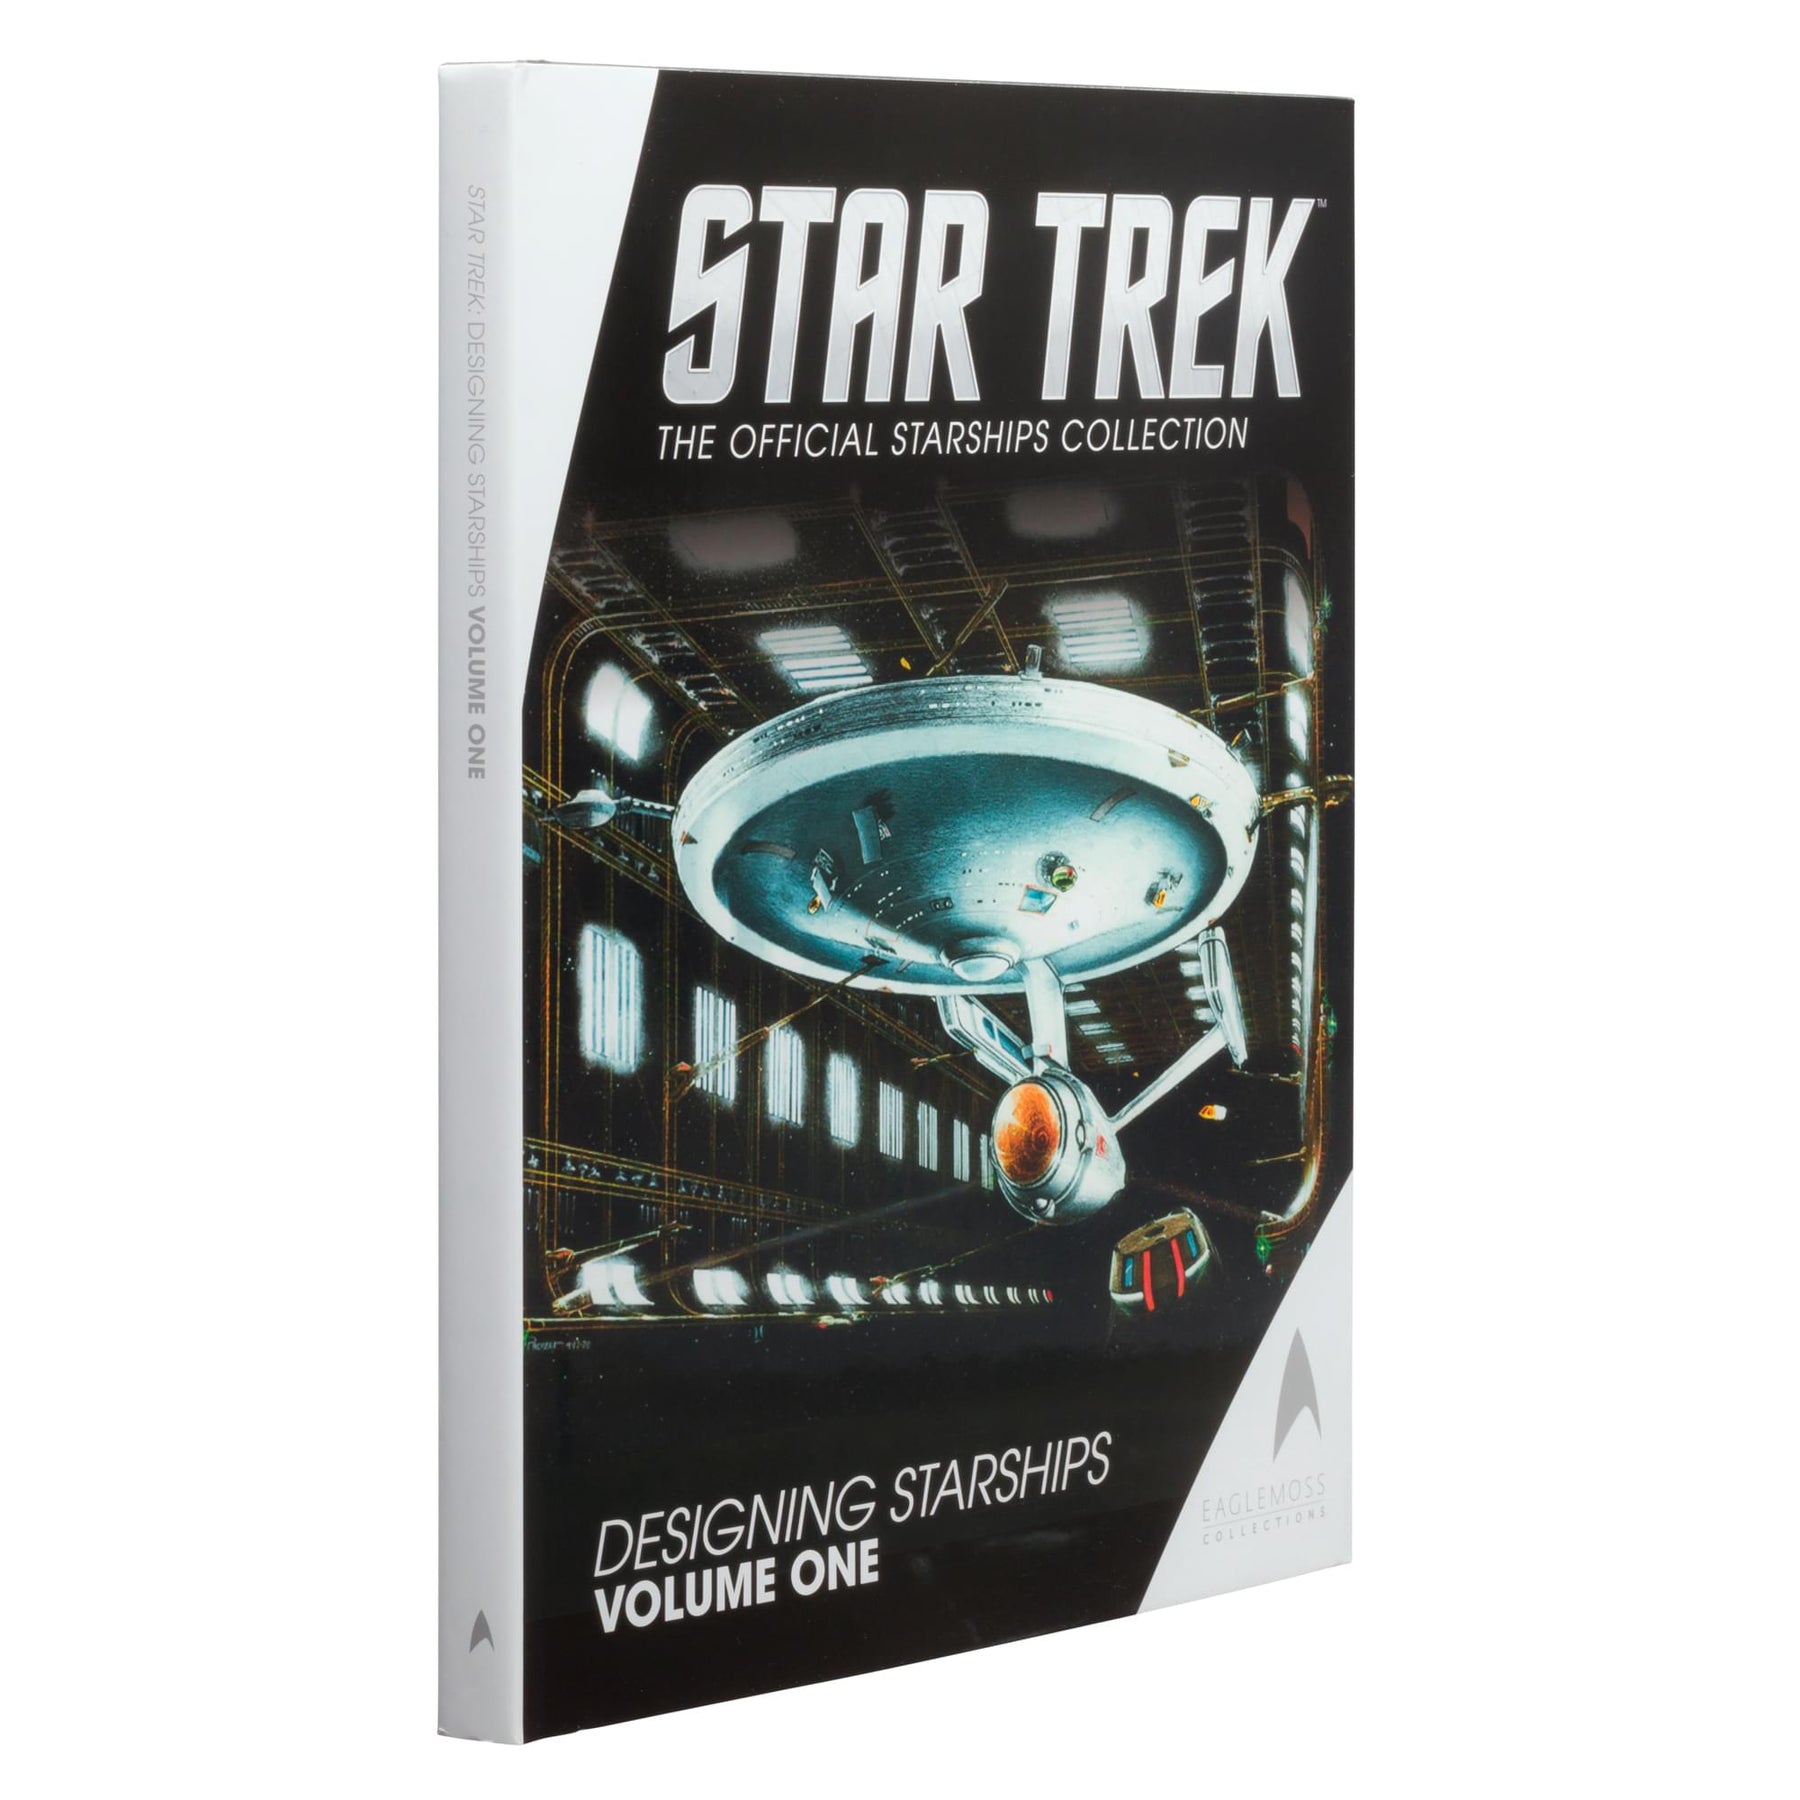 Star Trek Designing Starships Volume One Hardcover Book